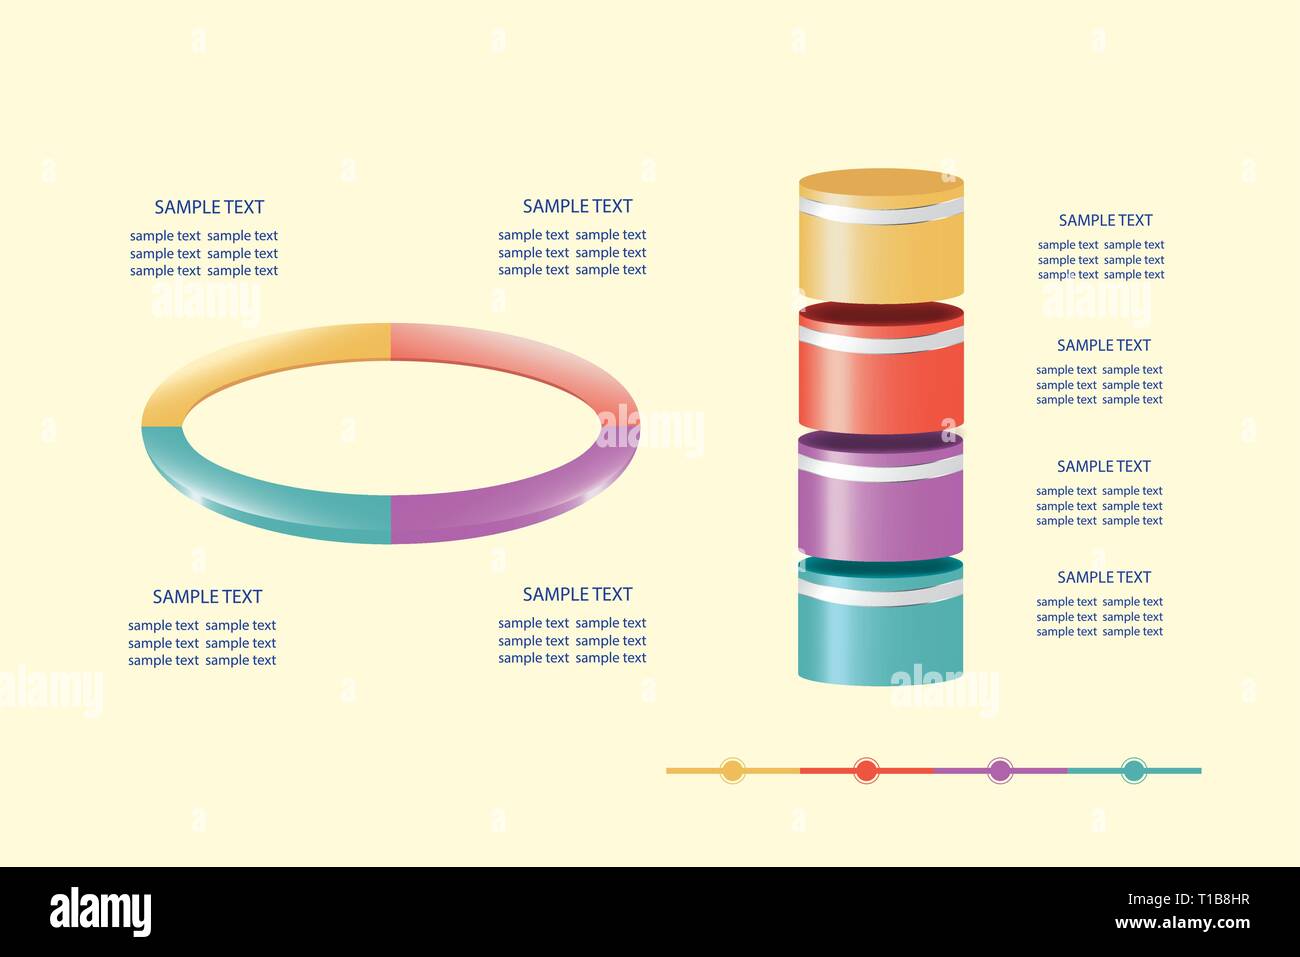 Infografico della ellisse pronto per descrivere il processo in quattro fasi e i cilindri verticali pronti a mostrare lo sviluppo di processo nella timeline. Illustrazione Vettoriale